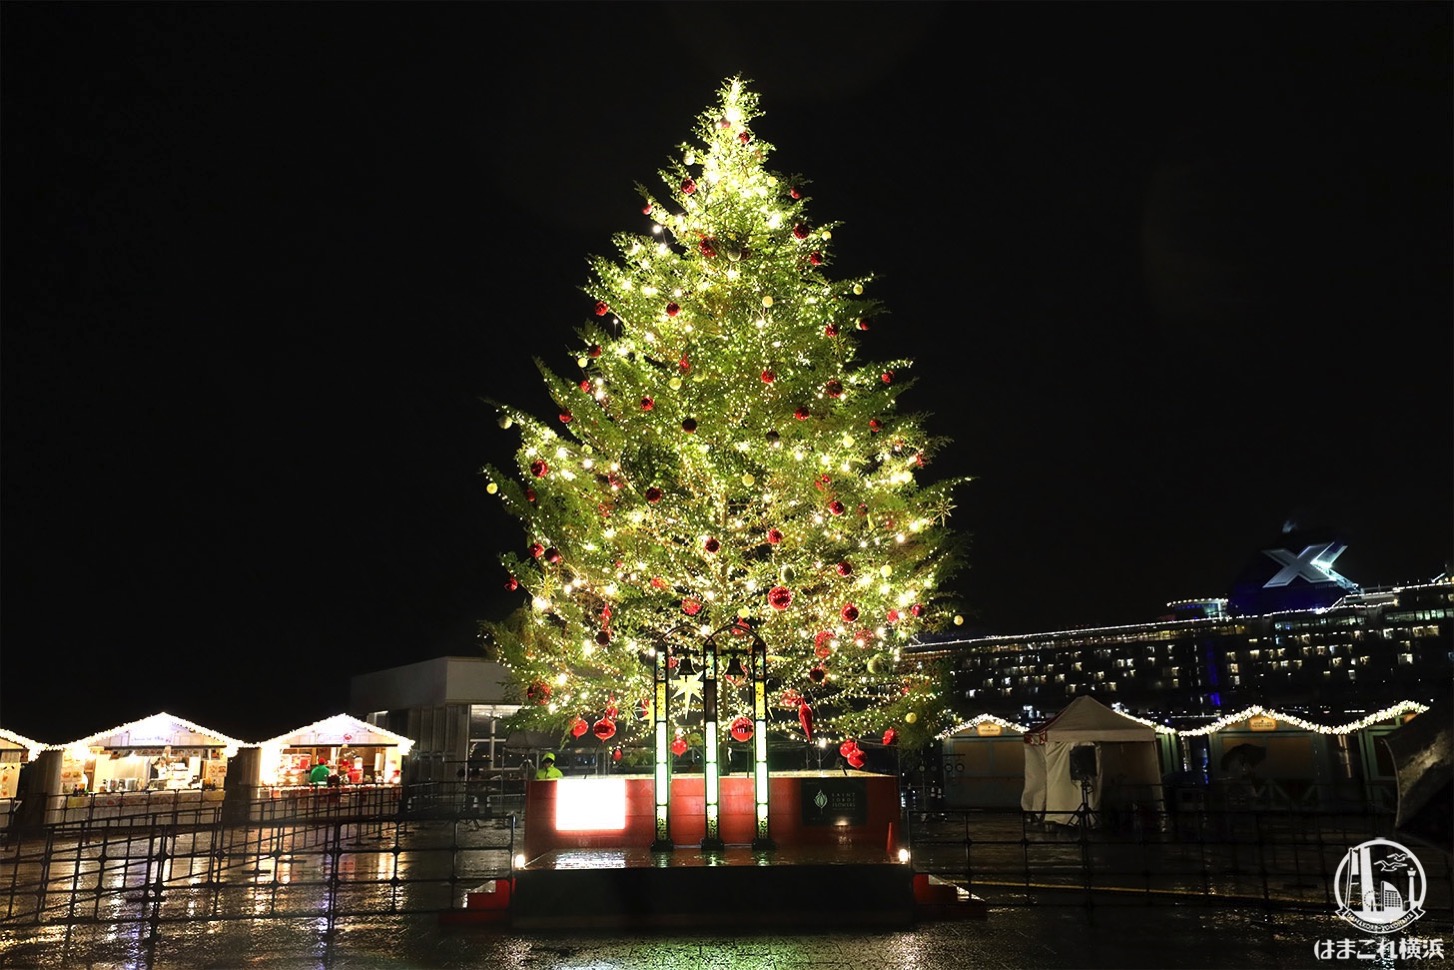 横浜赤レンガ倉庫のクリスマスマーケット会場拡張でよりロマンチックに 初日レポ はまこれ横浜